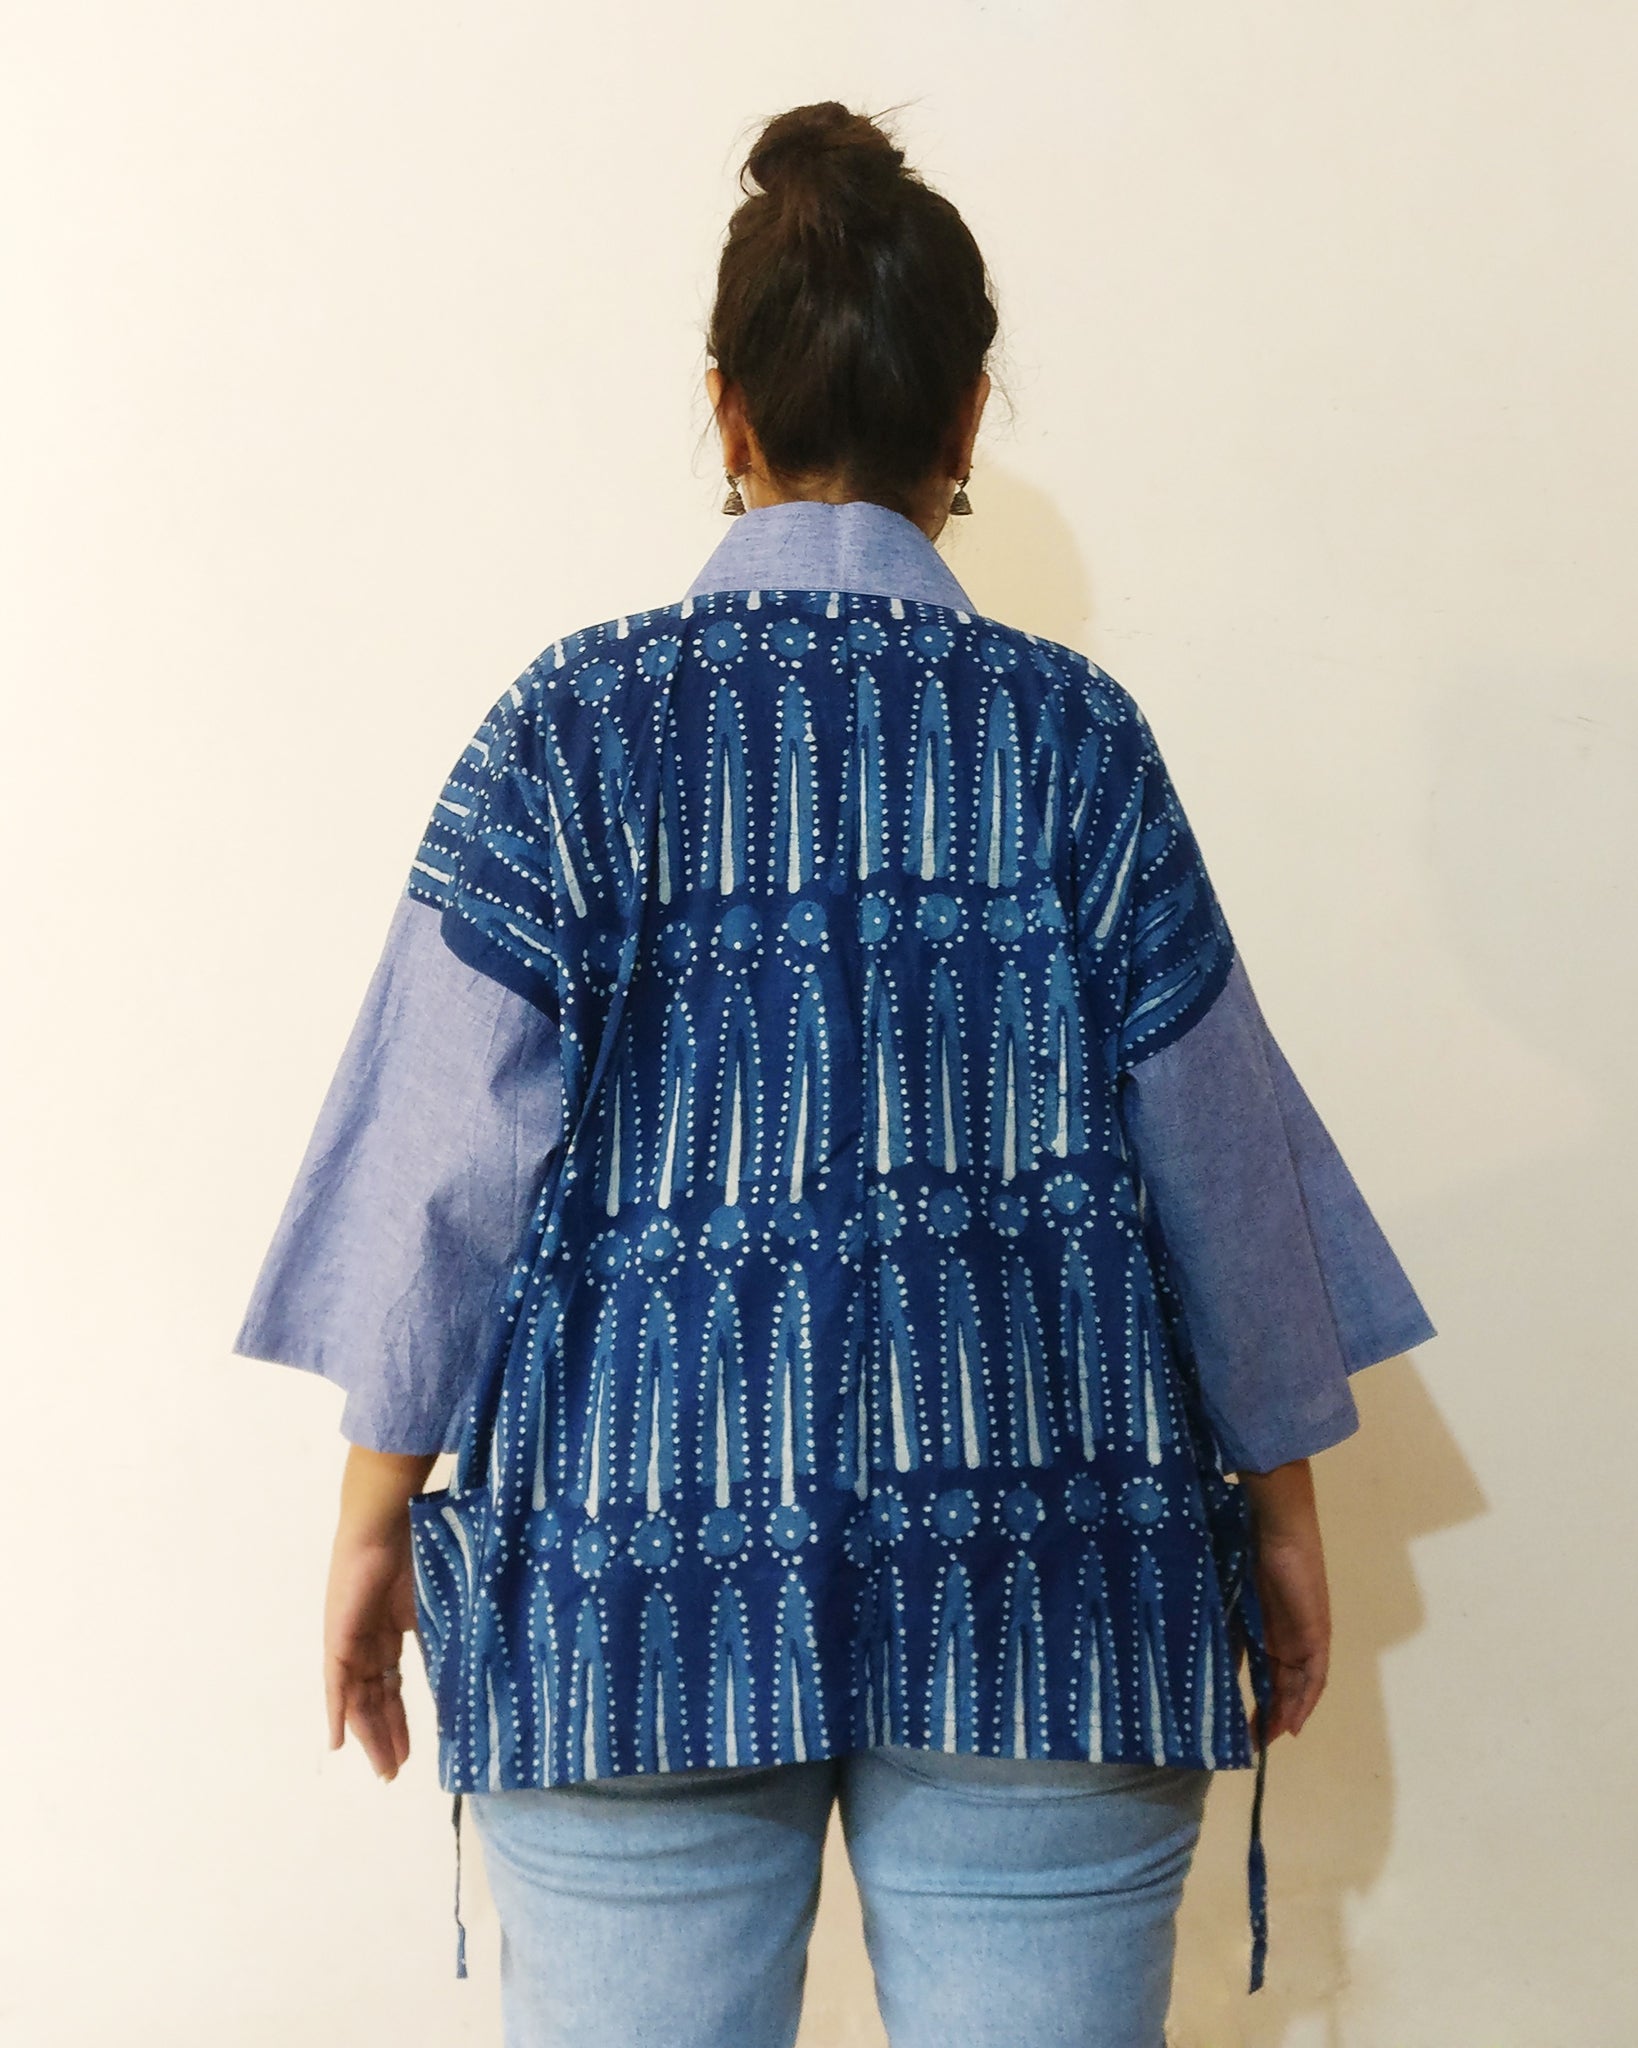 Kimono (Jinbei) Jacket - Indigo Spark Print & Blue Sleeves